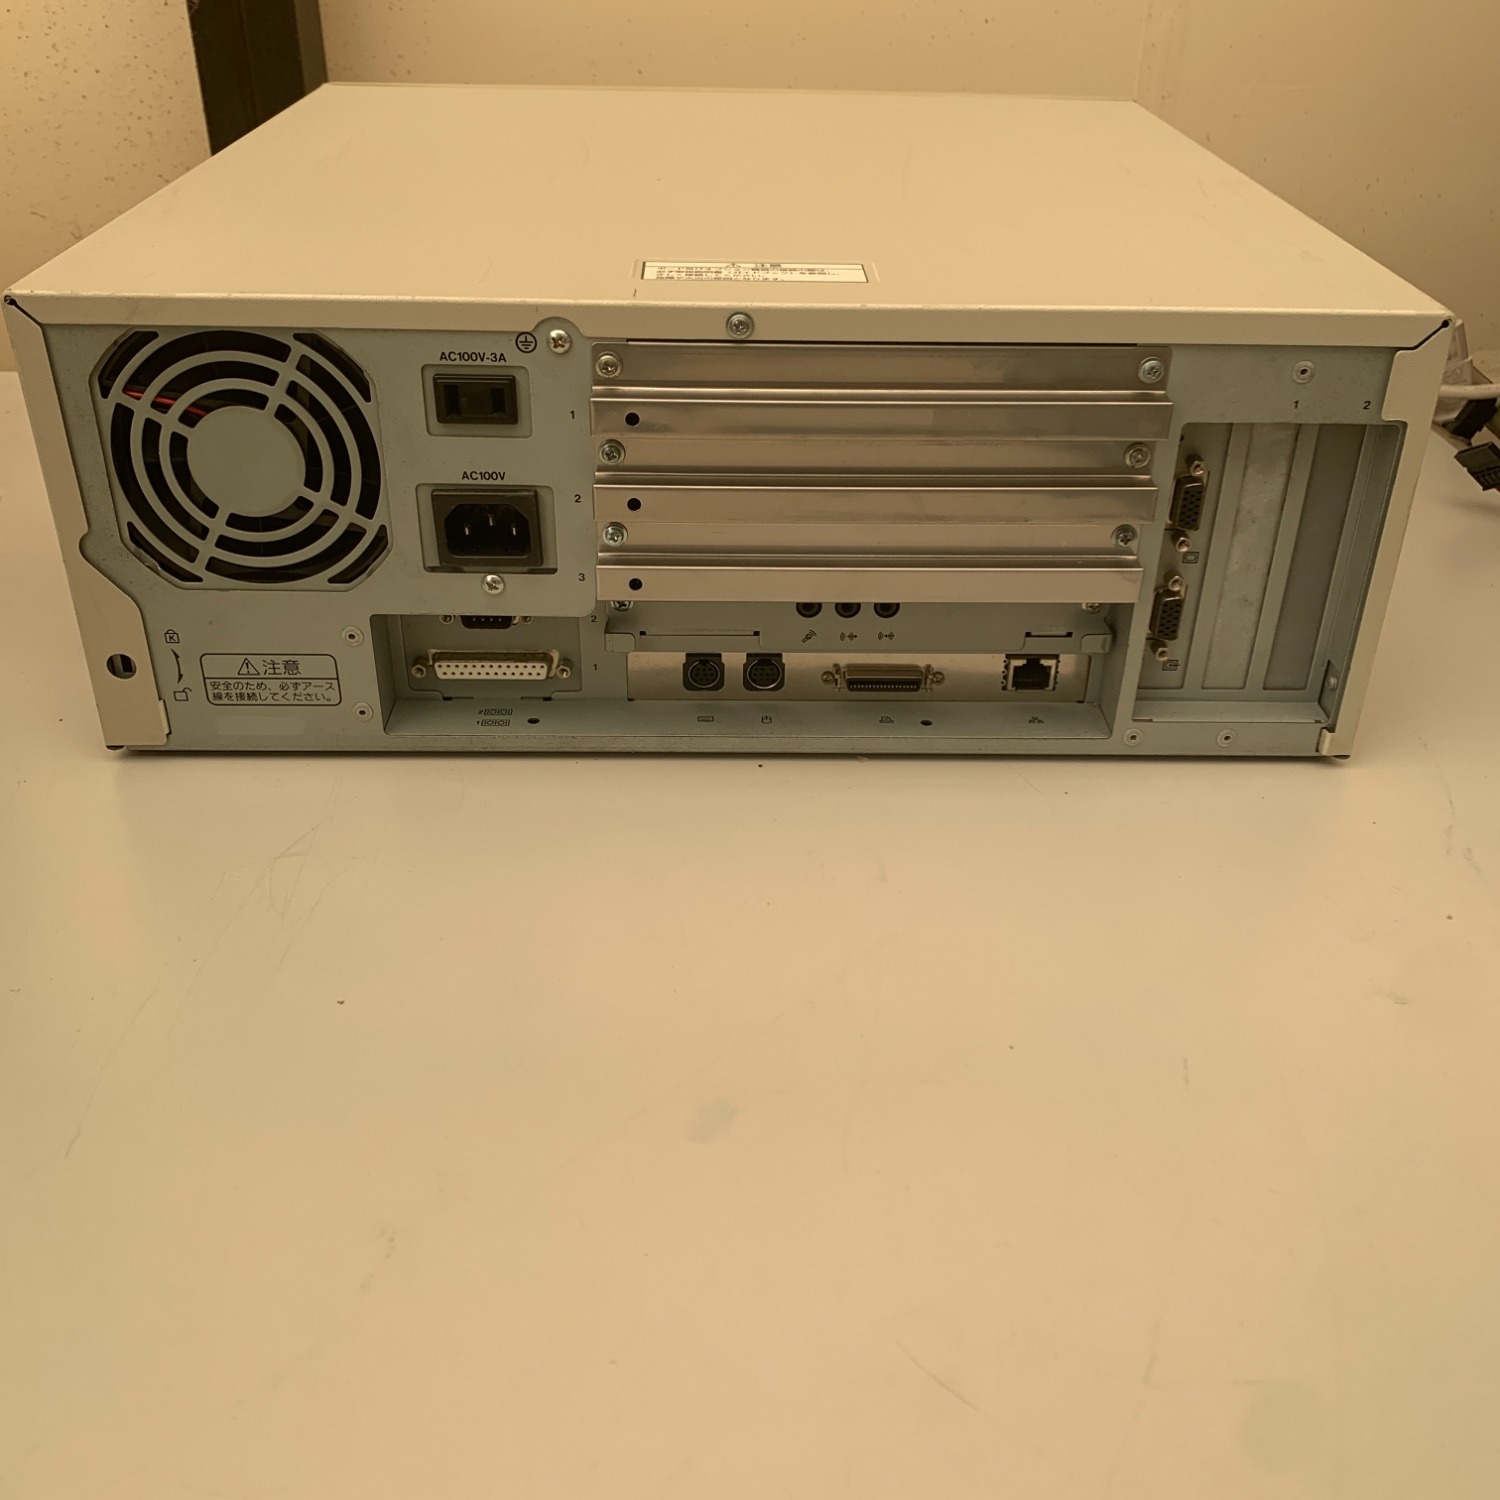 PC-9821Ra40